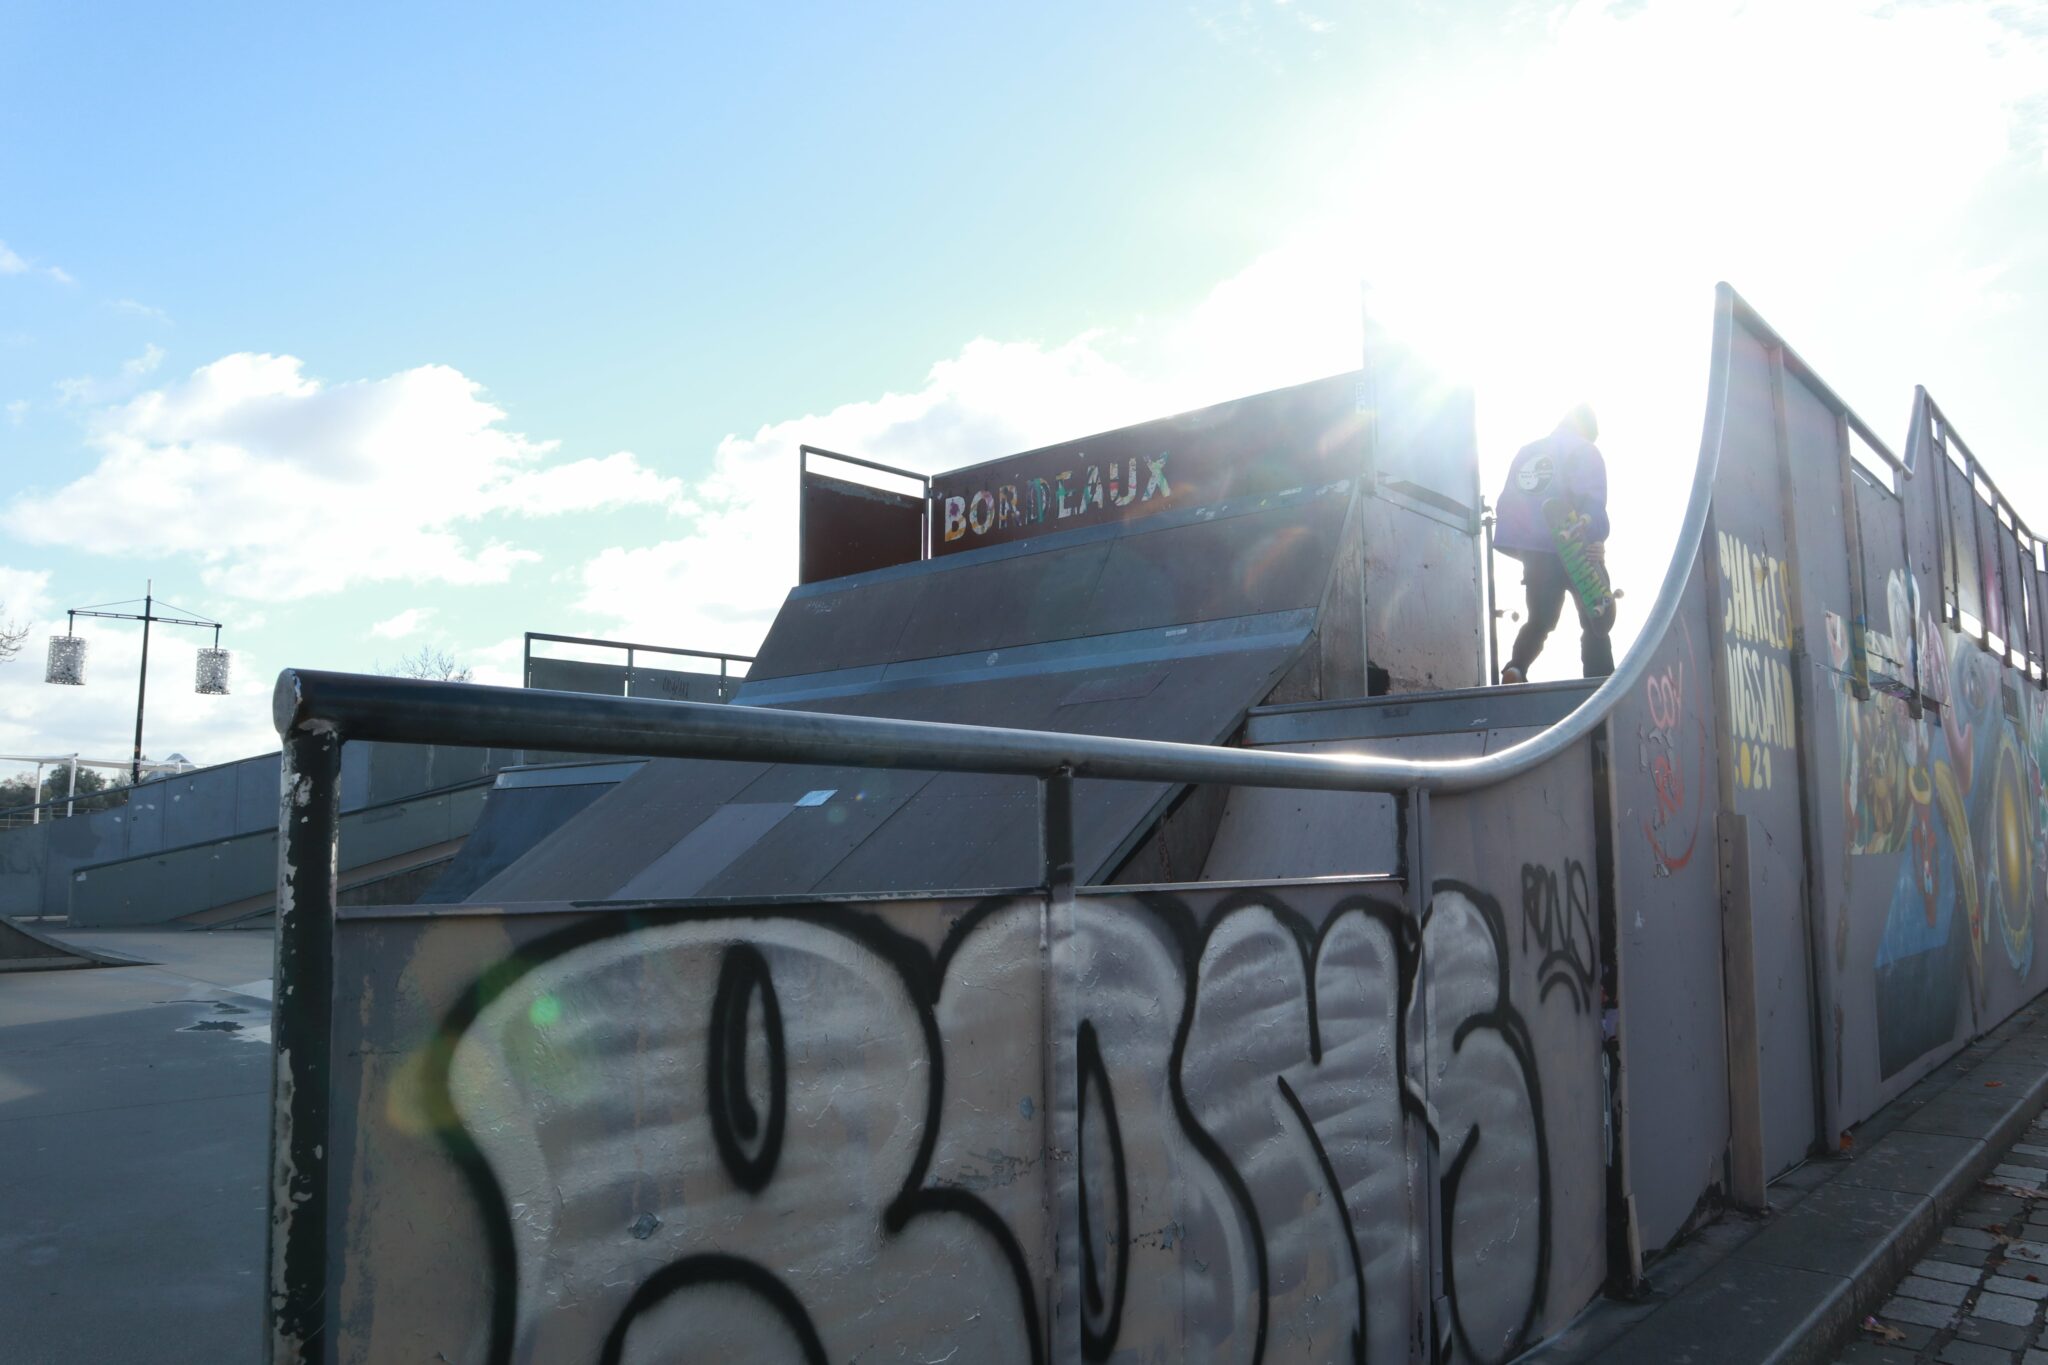 Au quartier des chartrons de Bordeaux, des adeptes des sports de glisse se réunissent au skatepark décoré de tags et de peinture murale. Lieu de rencontre, l’art urbain et le skateboard ont en commun la réappropriation de l’espace public, l’insurrection et la liberté d’expression, d’après le spécialiste David A. Ensminger, dans son ouvrage “Visual Vitriol : The Street Art and Subcutures of the Punk and Hardcore Generation”.